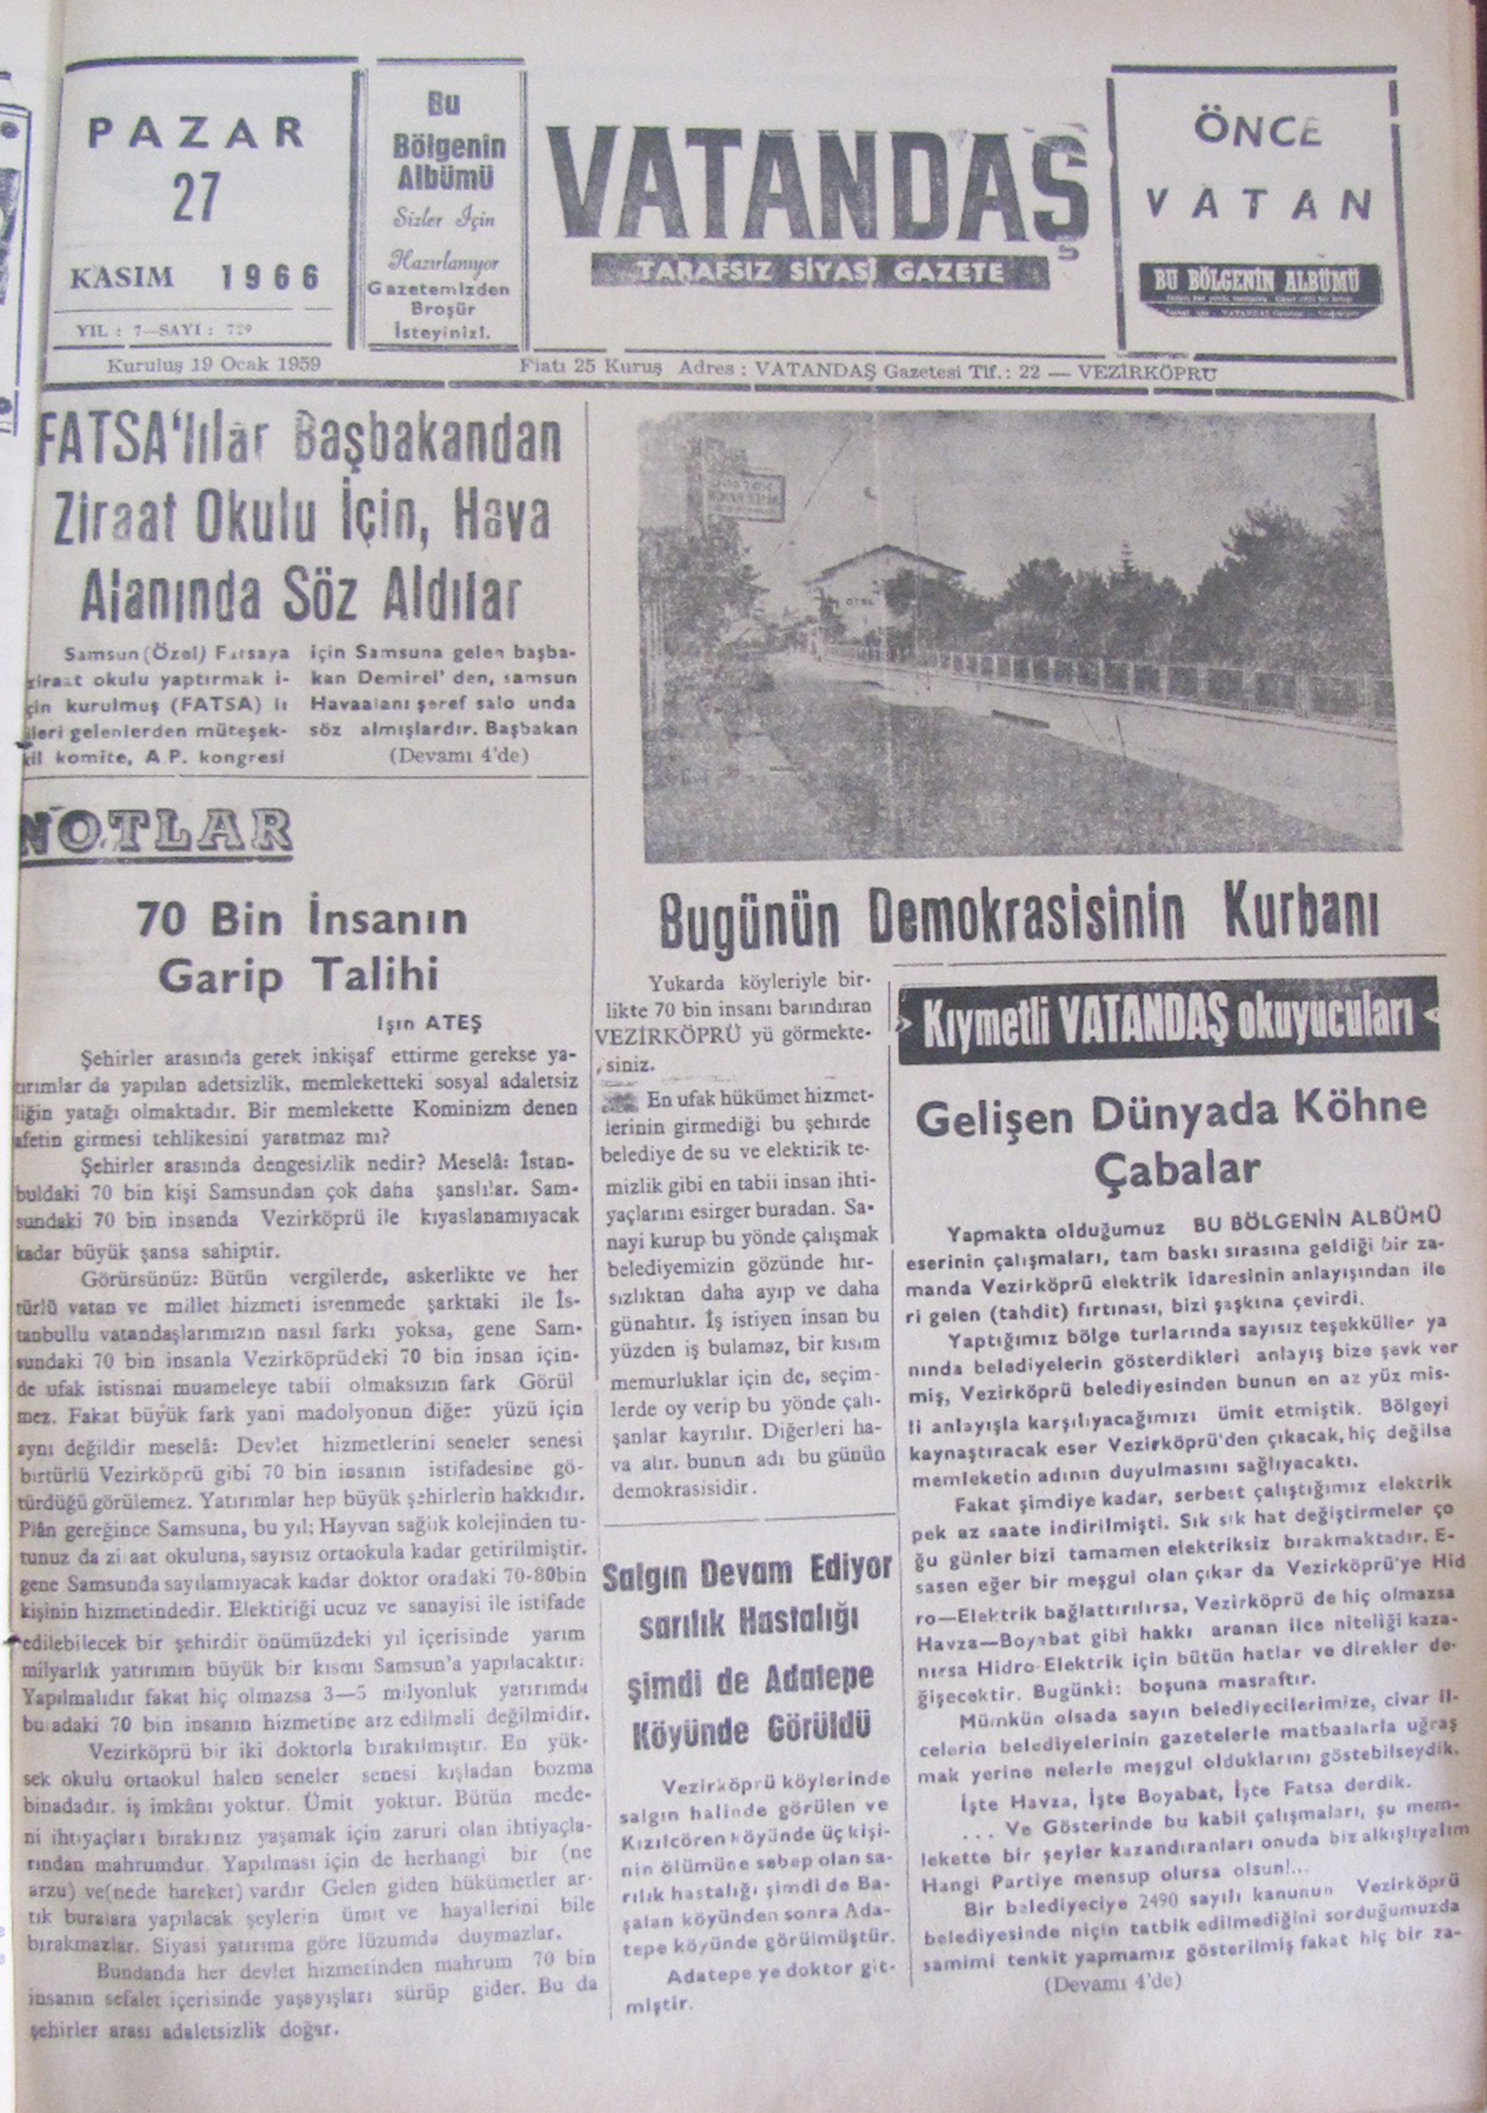 27 Kasım 1966 – 50 Yıl Önce